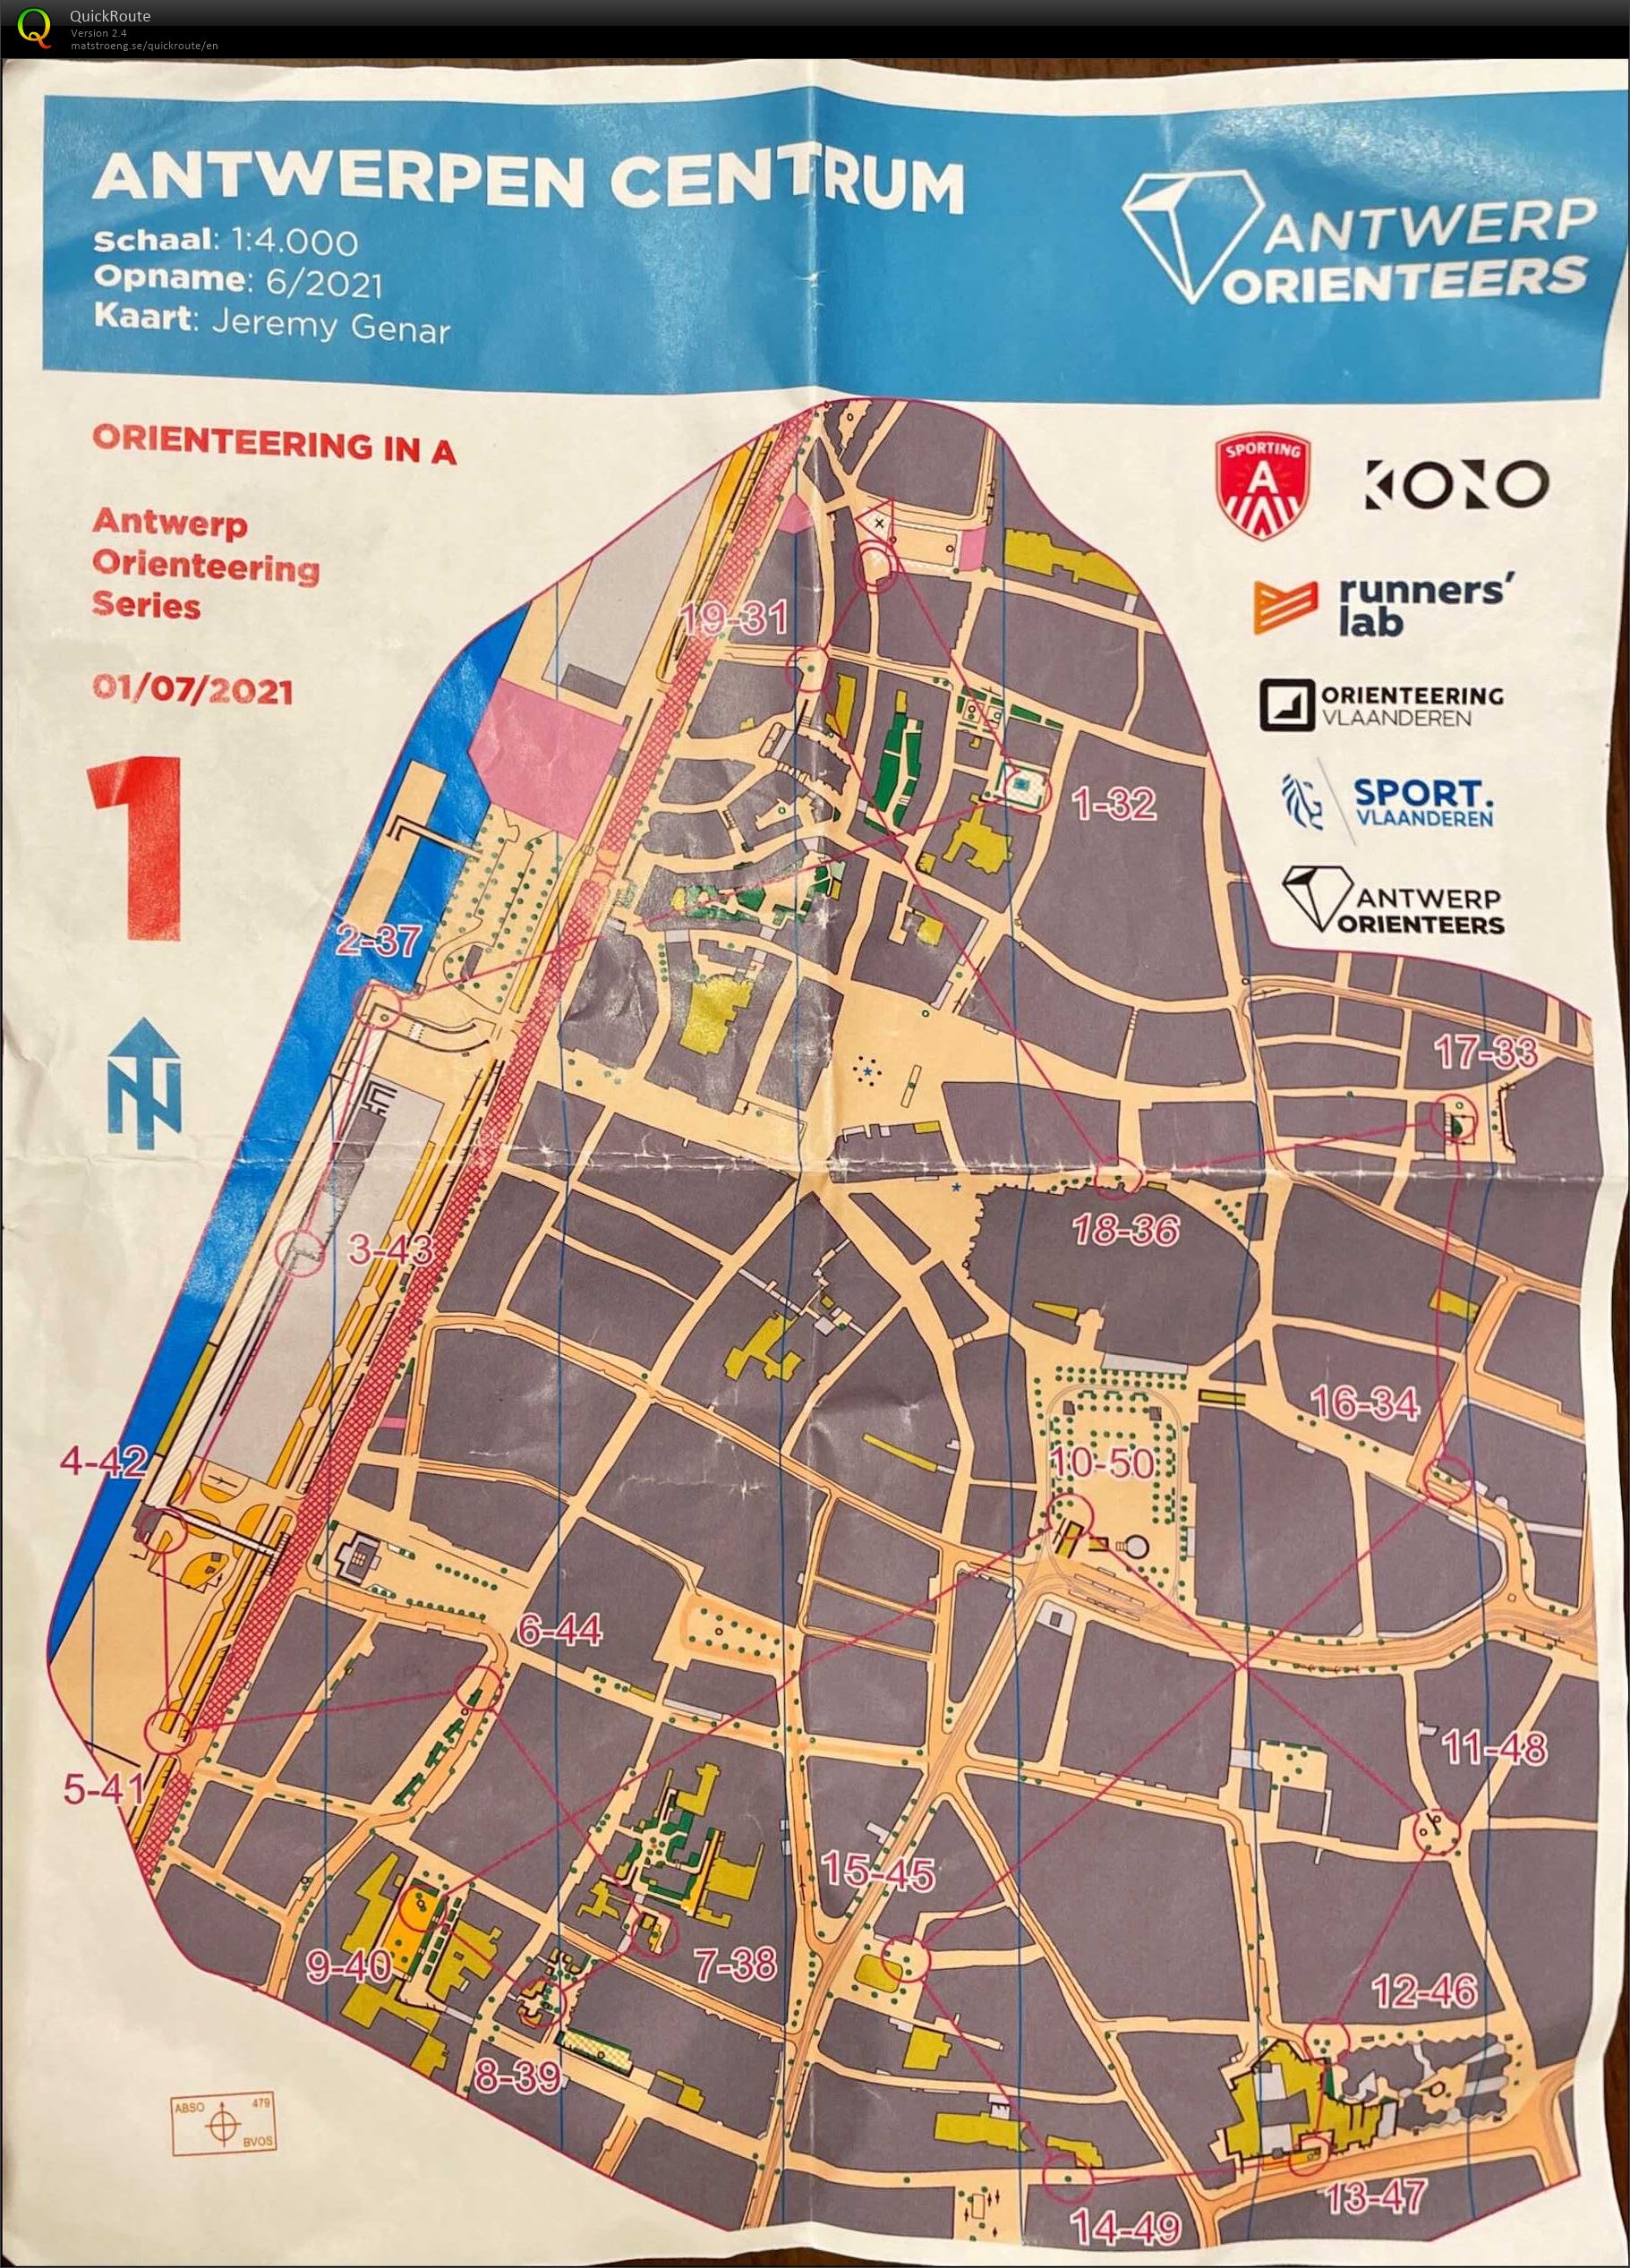 Antwerp Orienteering Series - Antwerpen Centrum - 5K (01-07-2021)